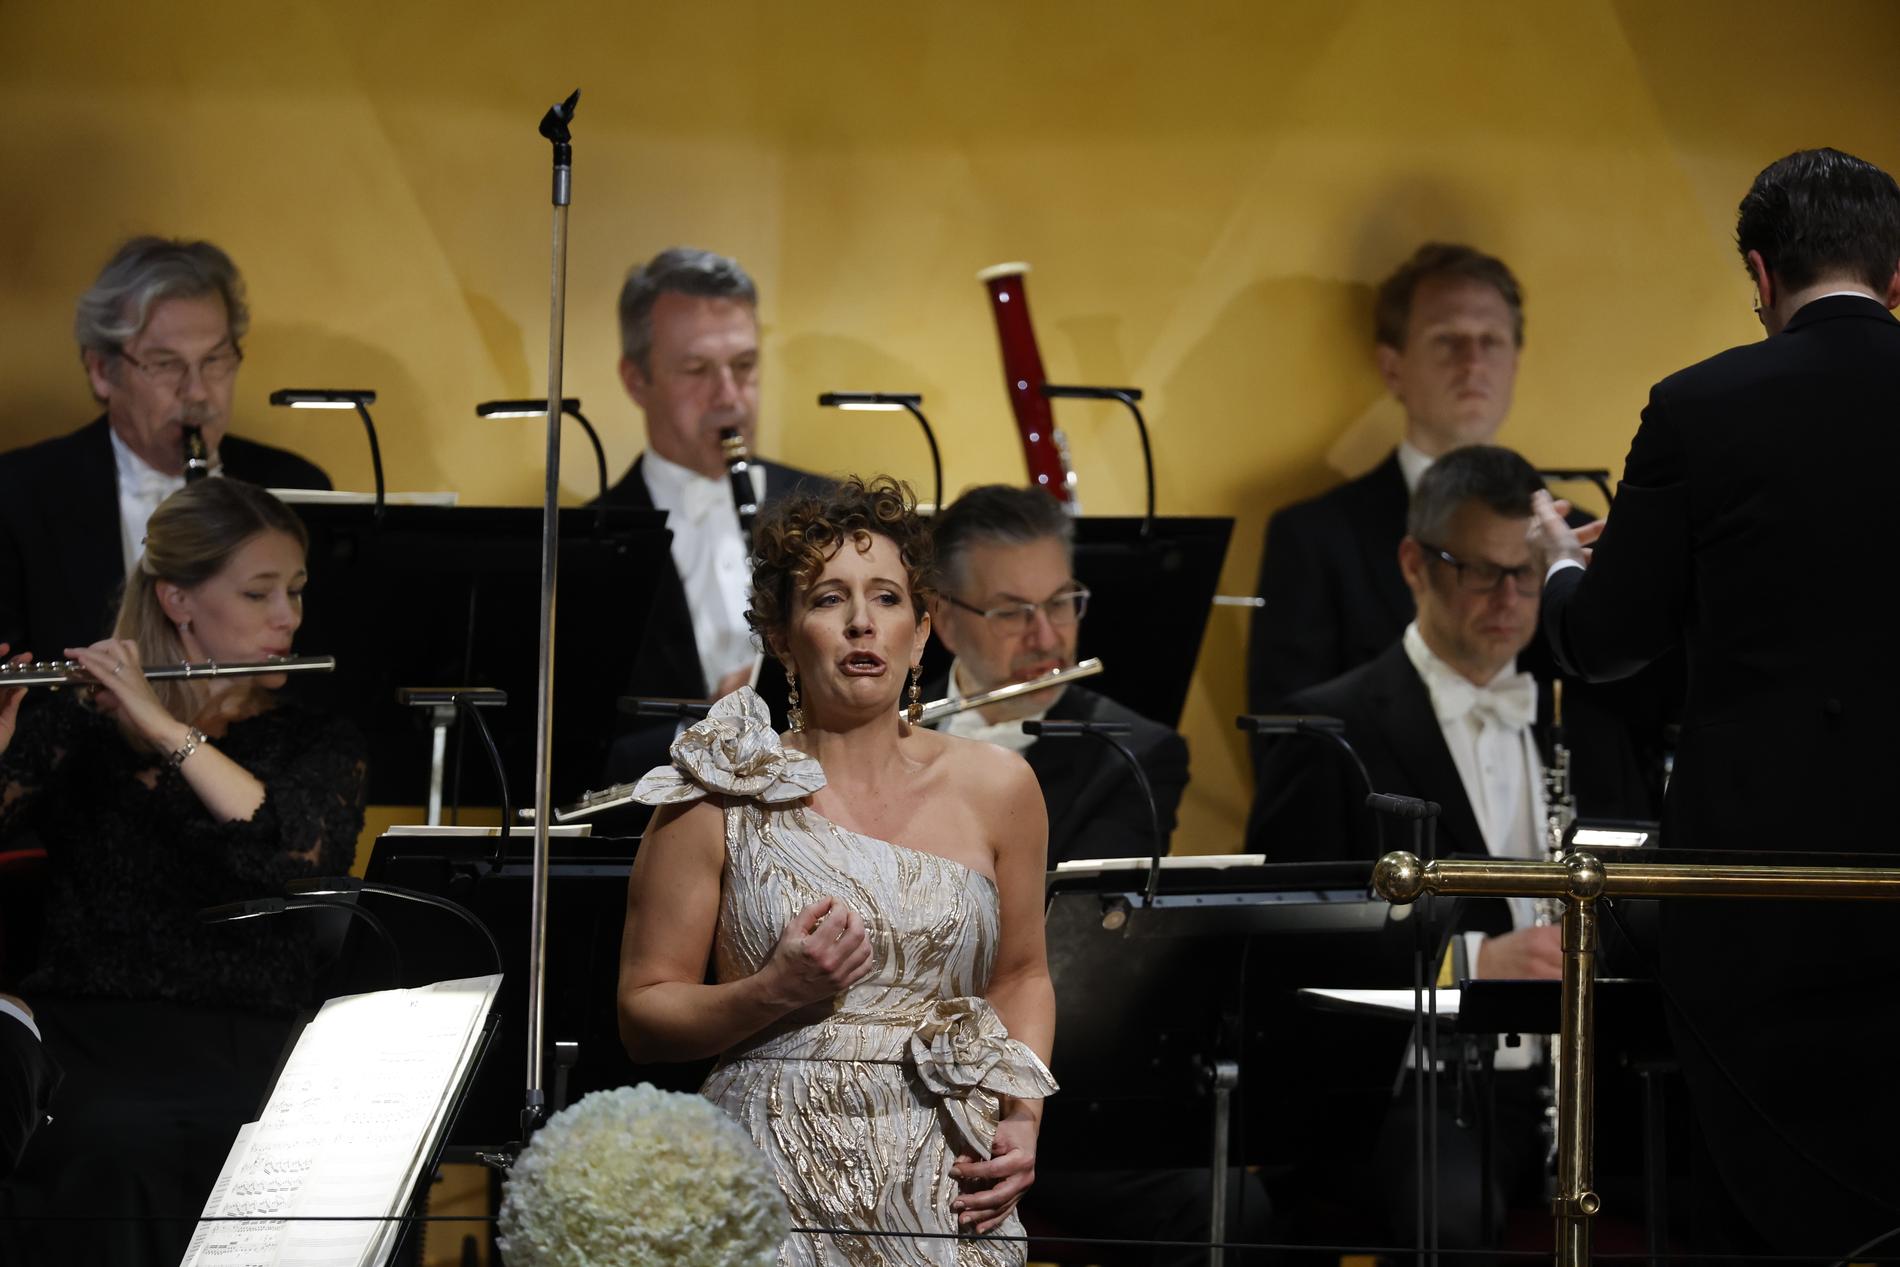 Sopranen Julia Sporsén gör huvudroller både i Verdis "Otello" och Tjajkovskijs "Jolanta" på Göteborgsoperan nästa säsong. (Arkivbild)